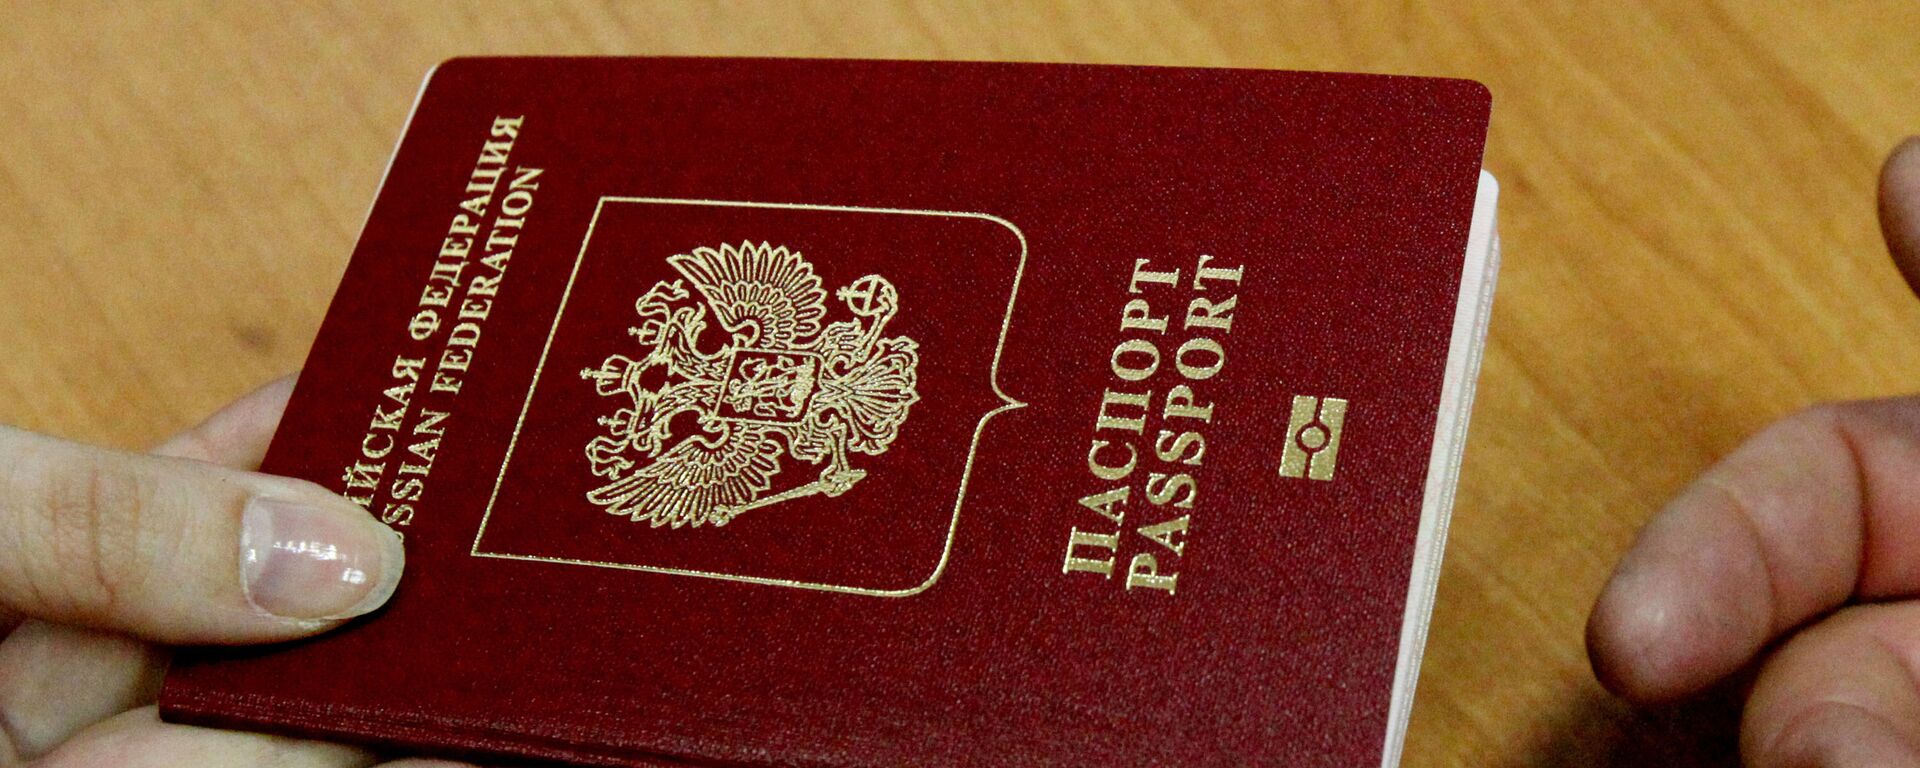 Пасош грађанина Руске Федерације - Sputnik Србија, 1920, 29.09.2021